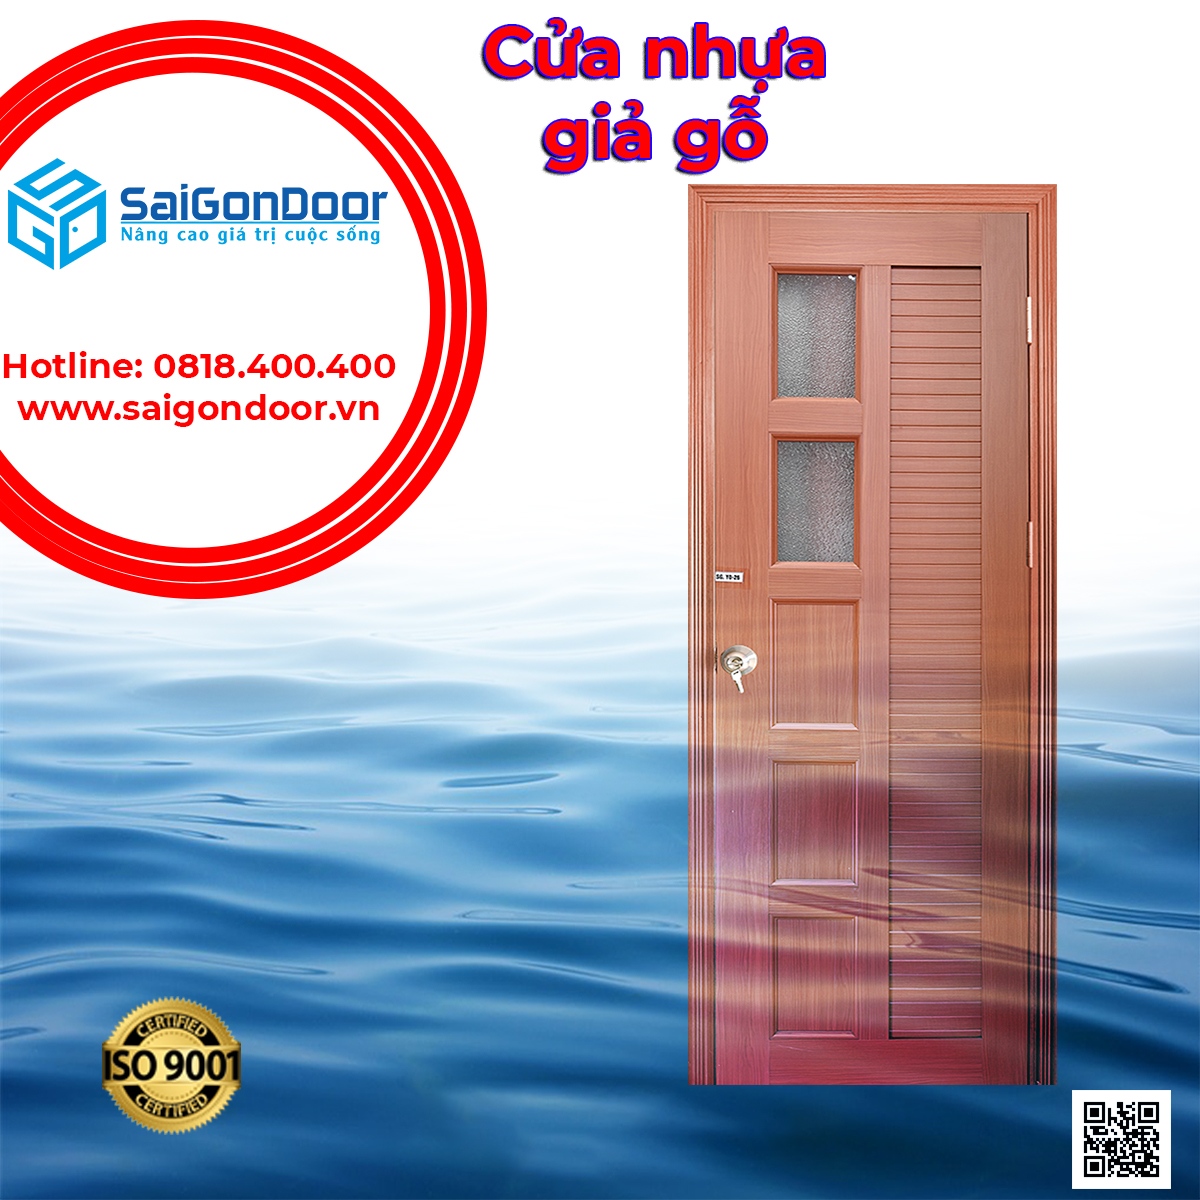 SaiGonDoor - nơi cung cấp cửa nhựa giả gỗ hàng đầu